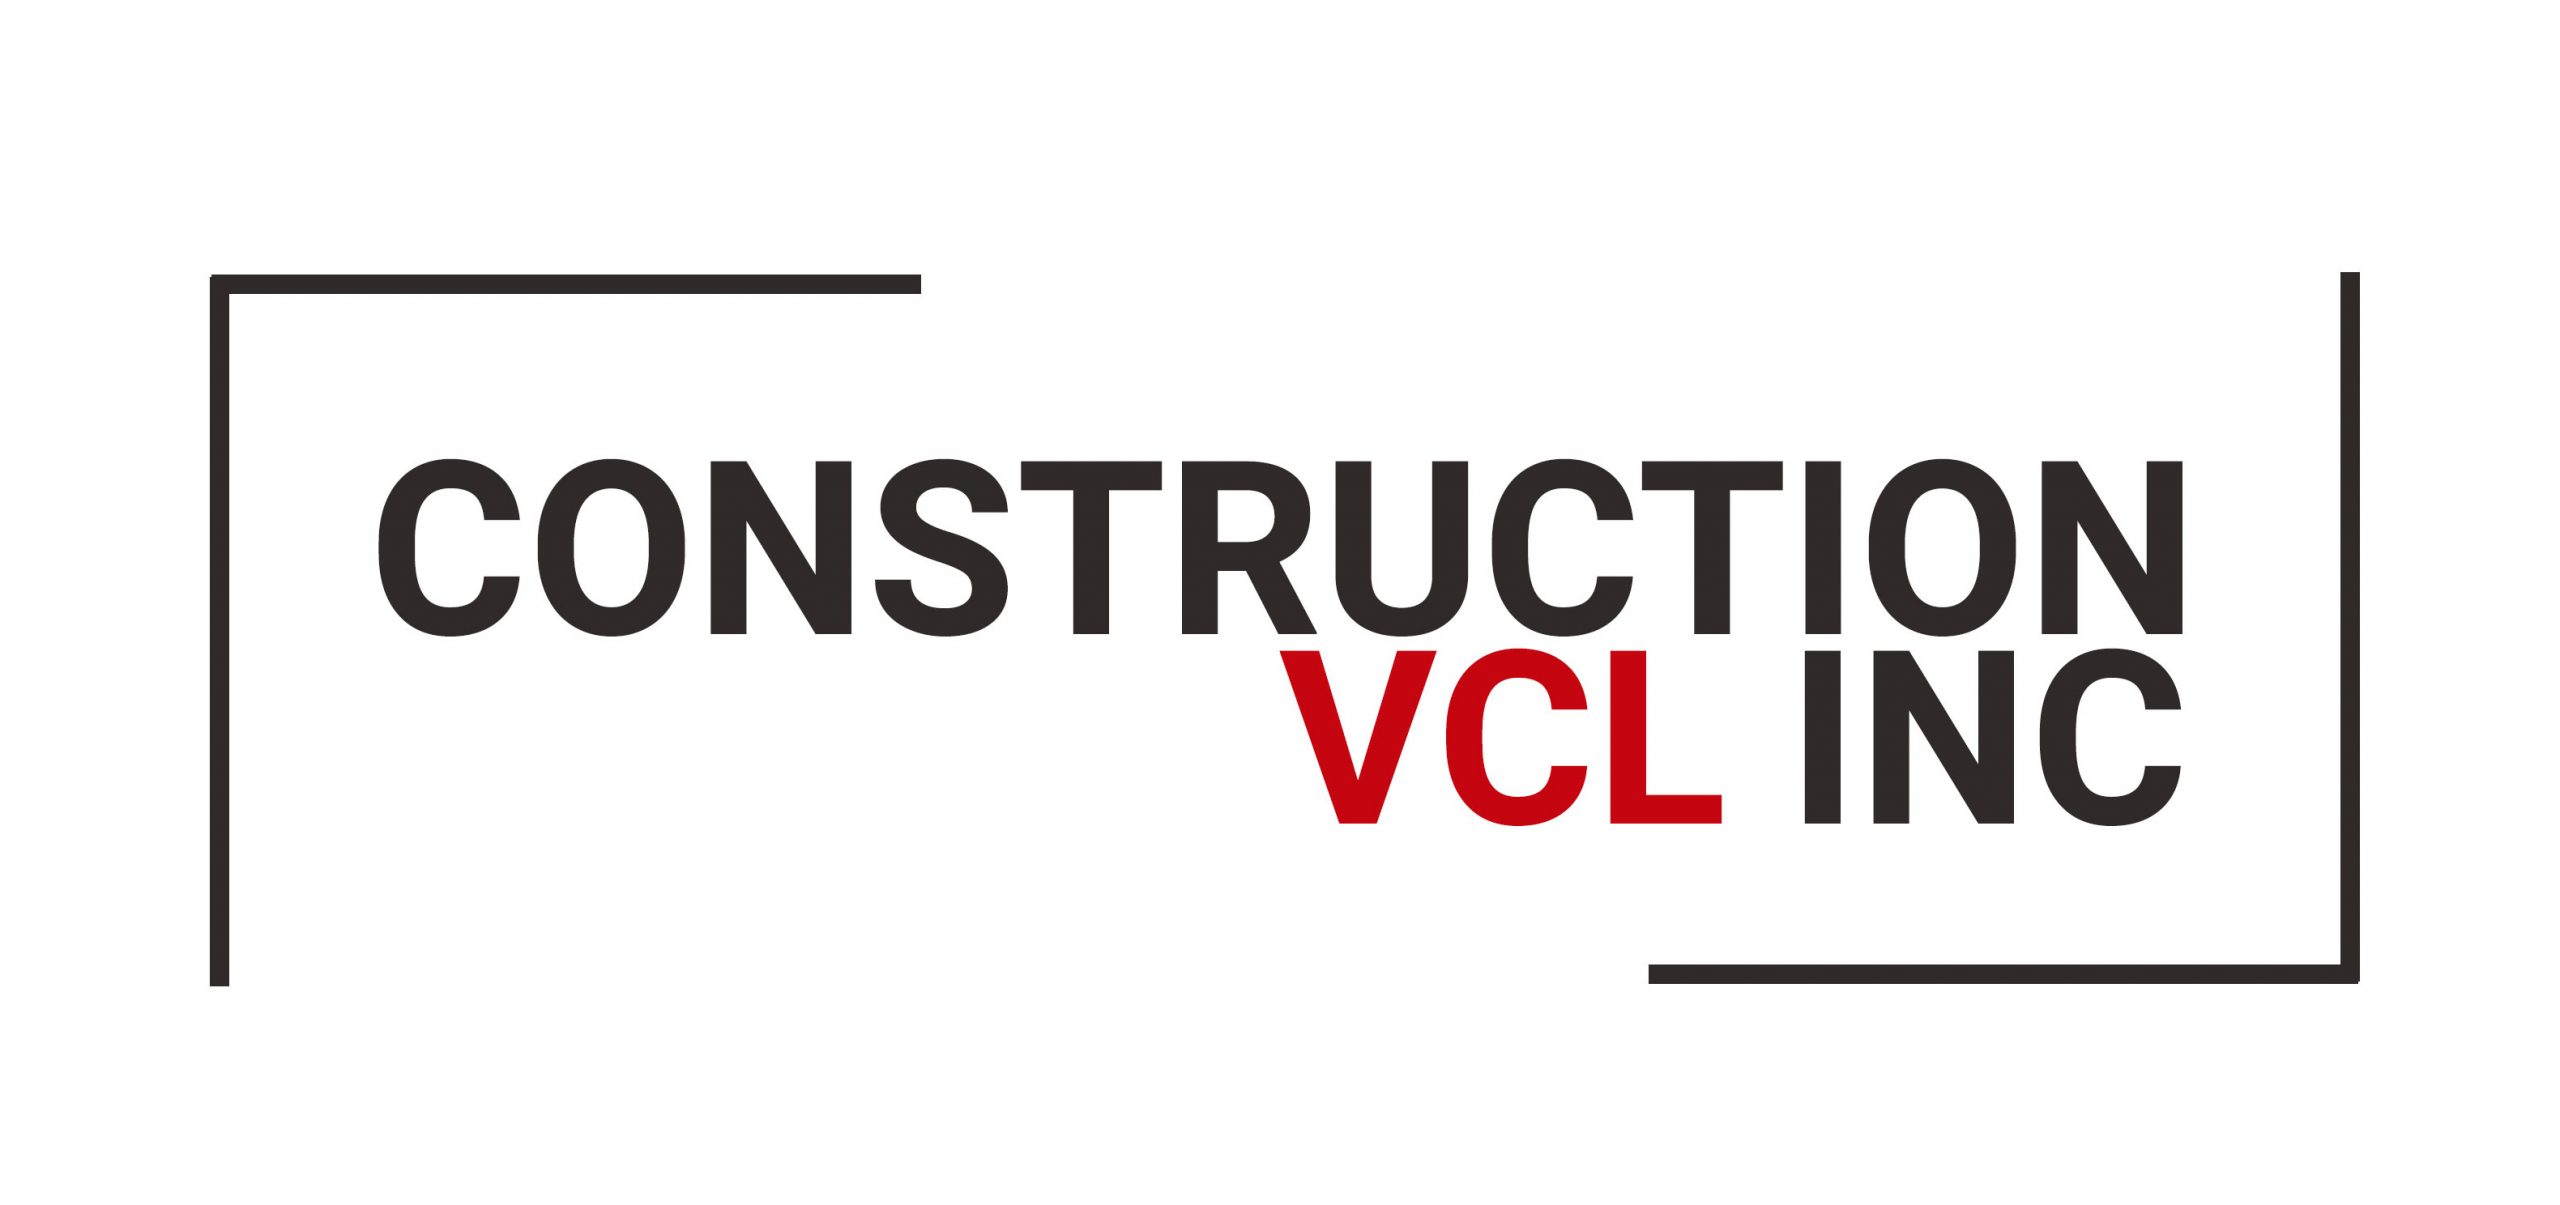 Construction VCL inc